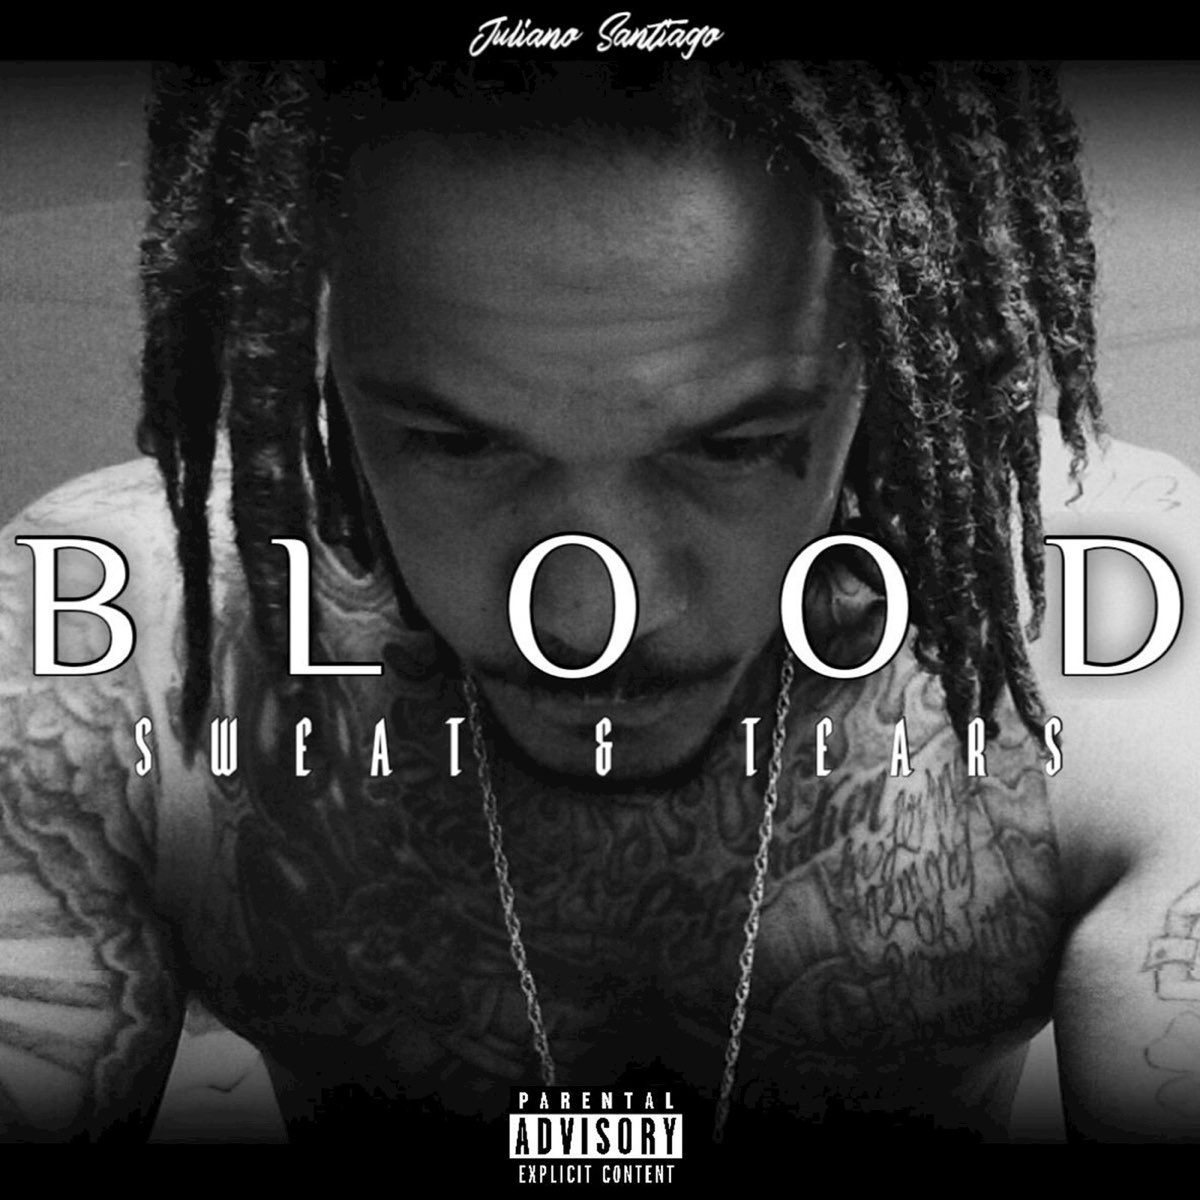 Juliano Santiago - Blood Sweat & Tears